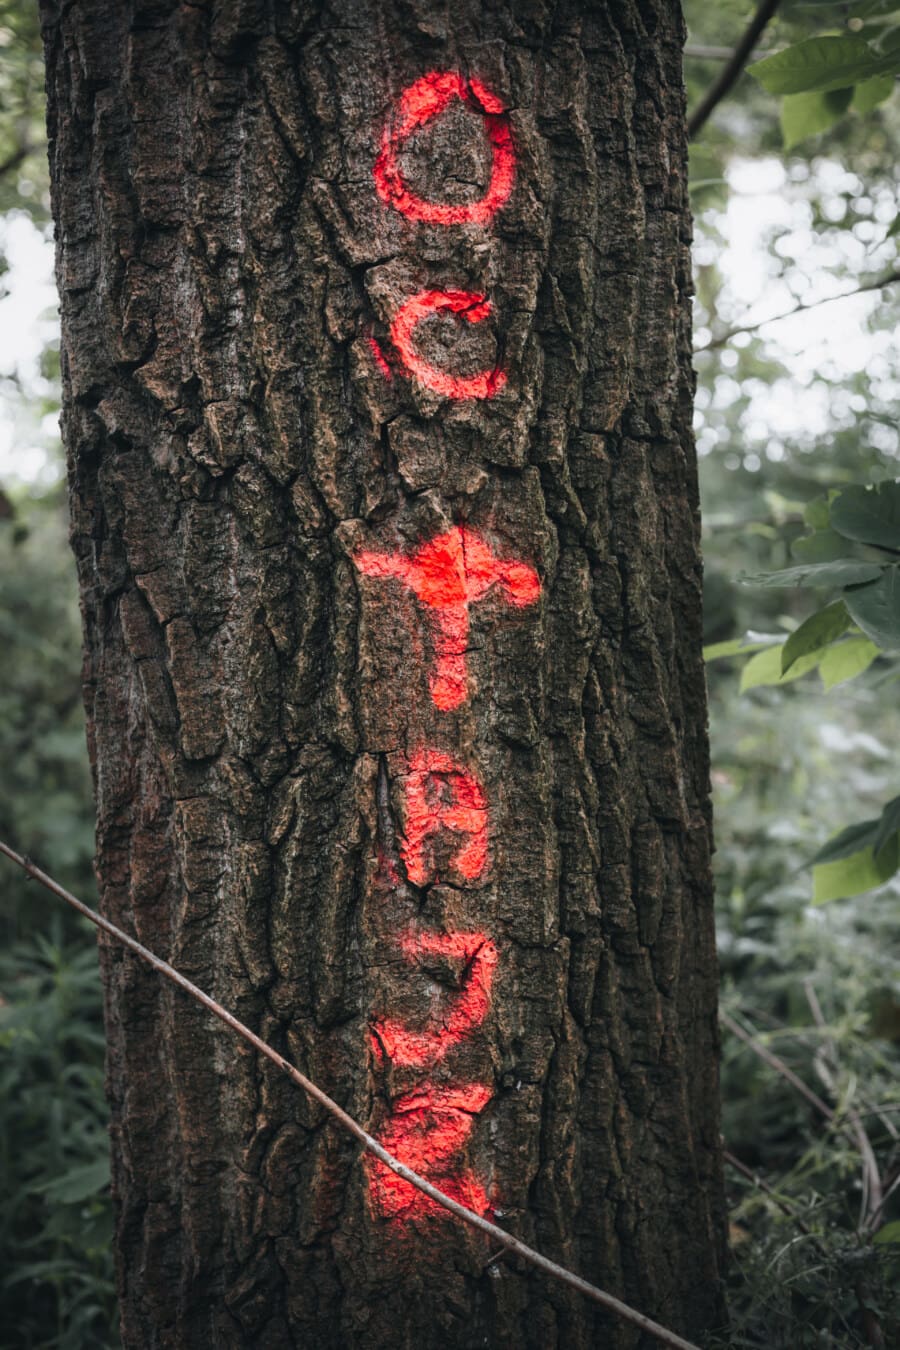 đánh dấu, cây, biểu tượng, kirin, văn bản, màu đỏ, Sơn, gỗ, vỏ cây, thân cây